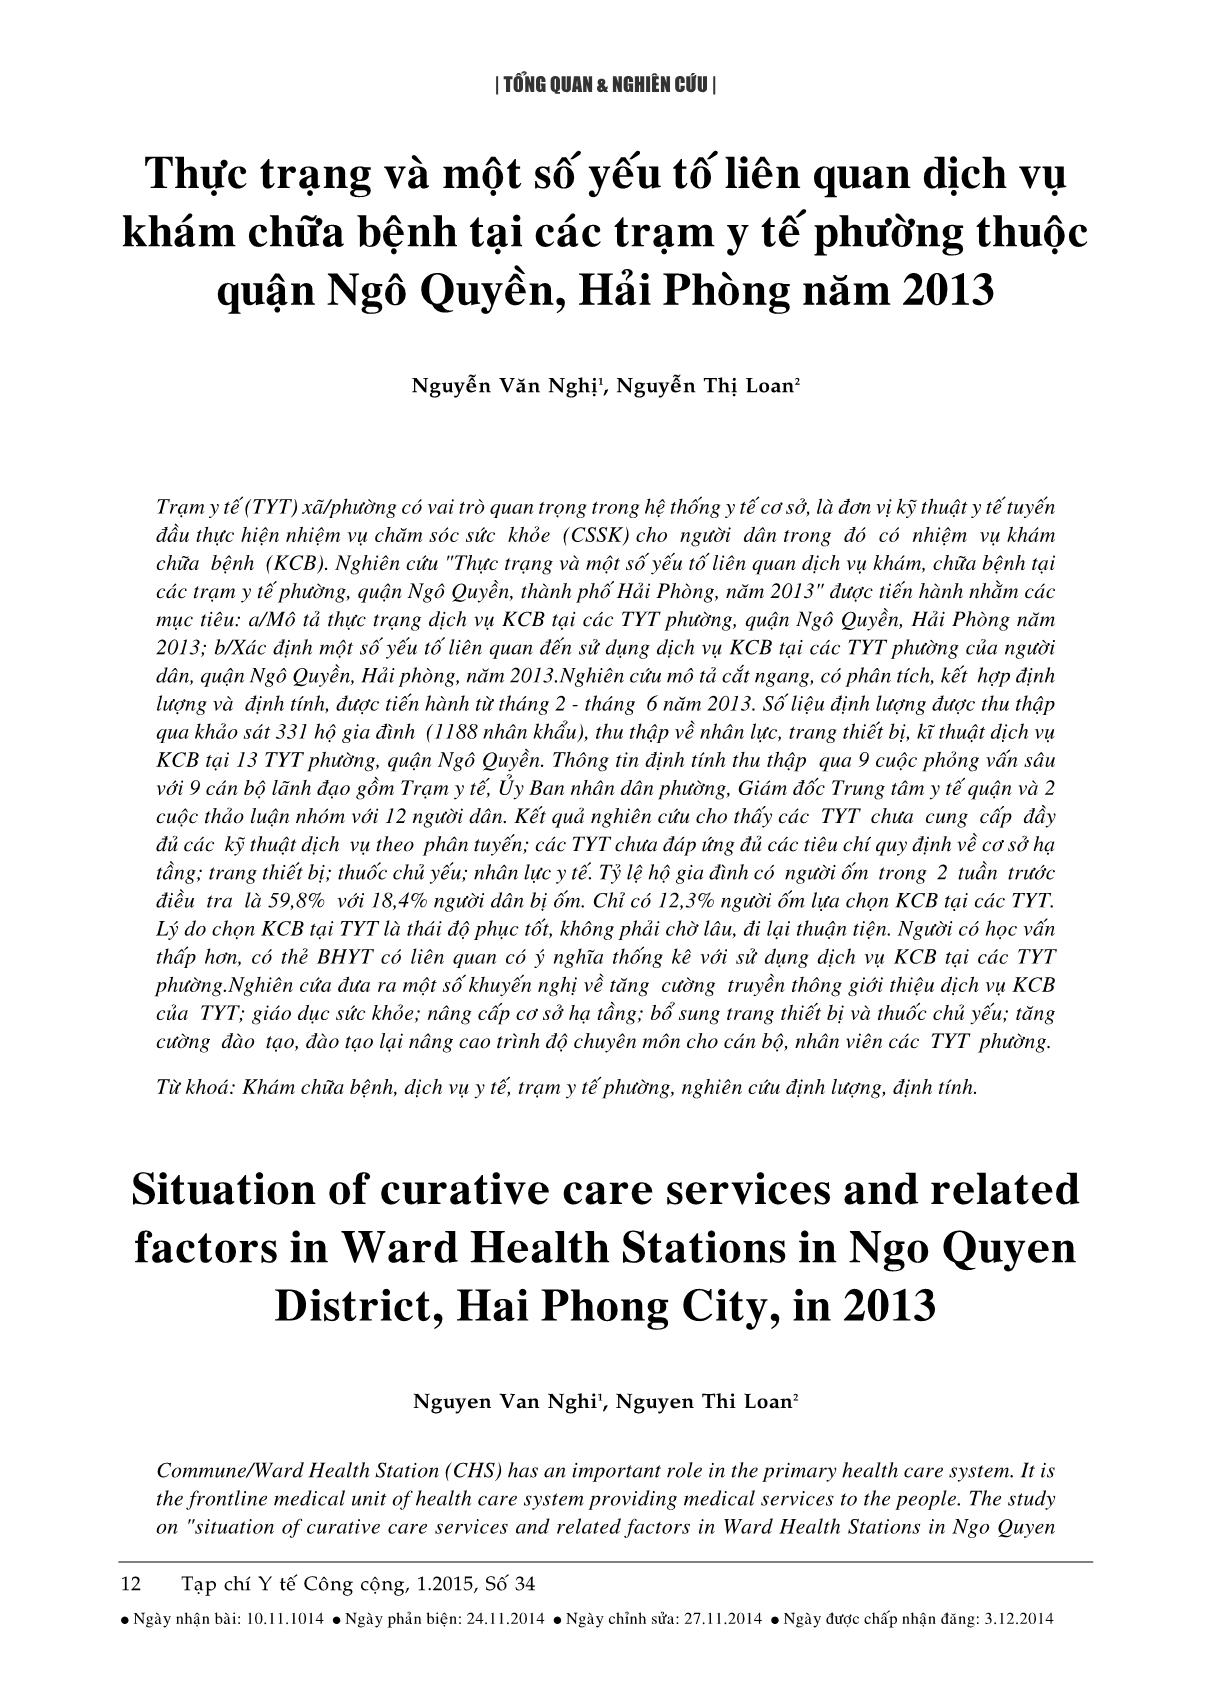 Thực trạng và một số yếu tố liên quan dịch vụ khám chữa bệnh tại các trạm y tế phường thuộc quận Ngô Quyền, Hải Phòng năm 2013 trang 1